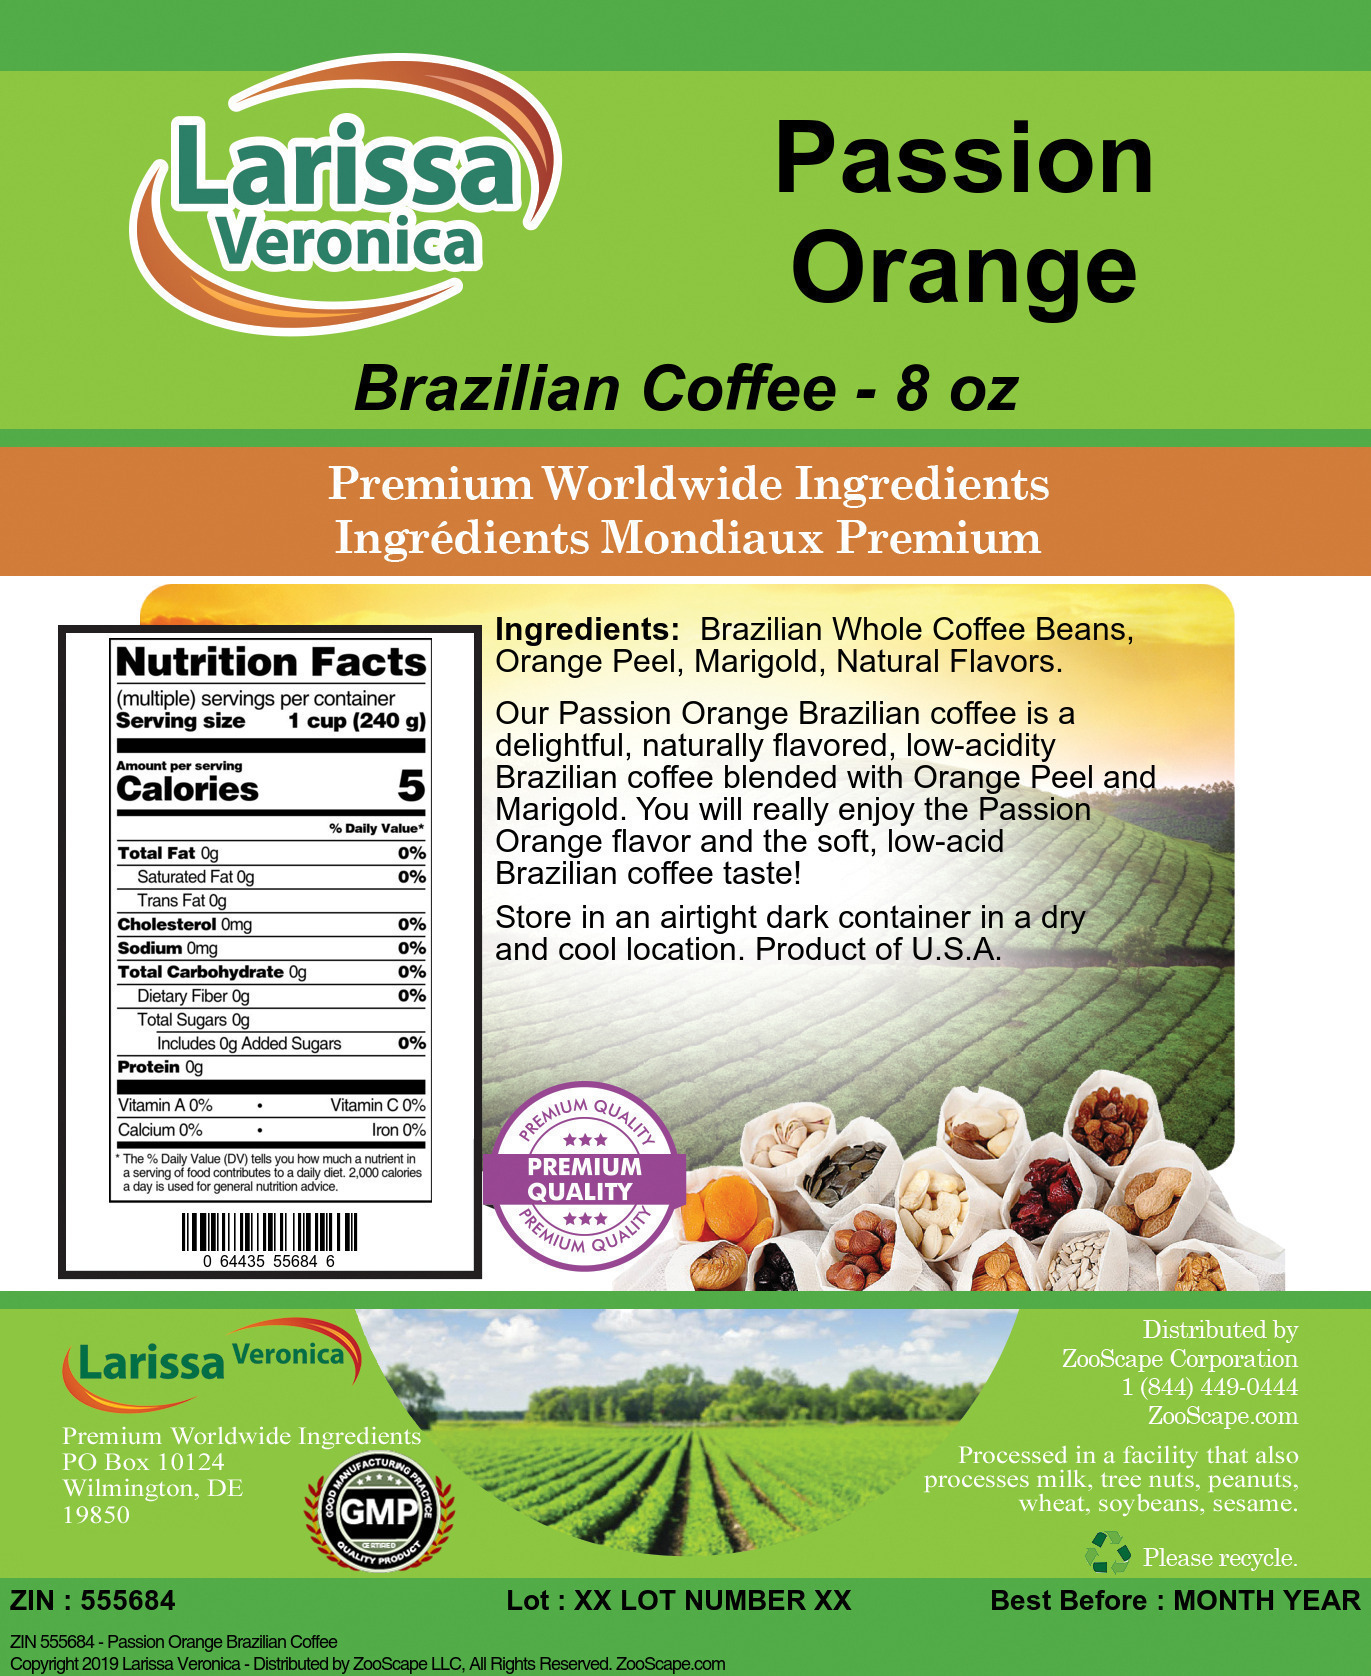 Passion Orange Brazilian Coffee - Label